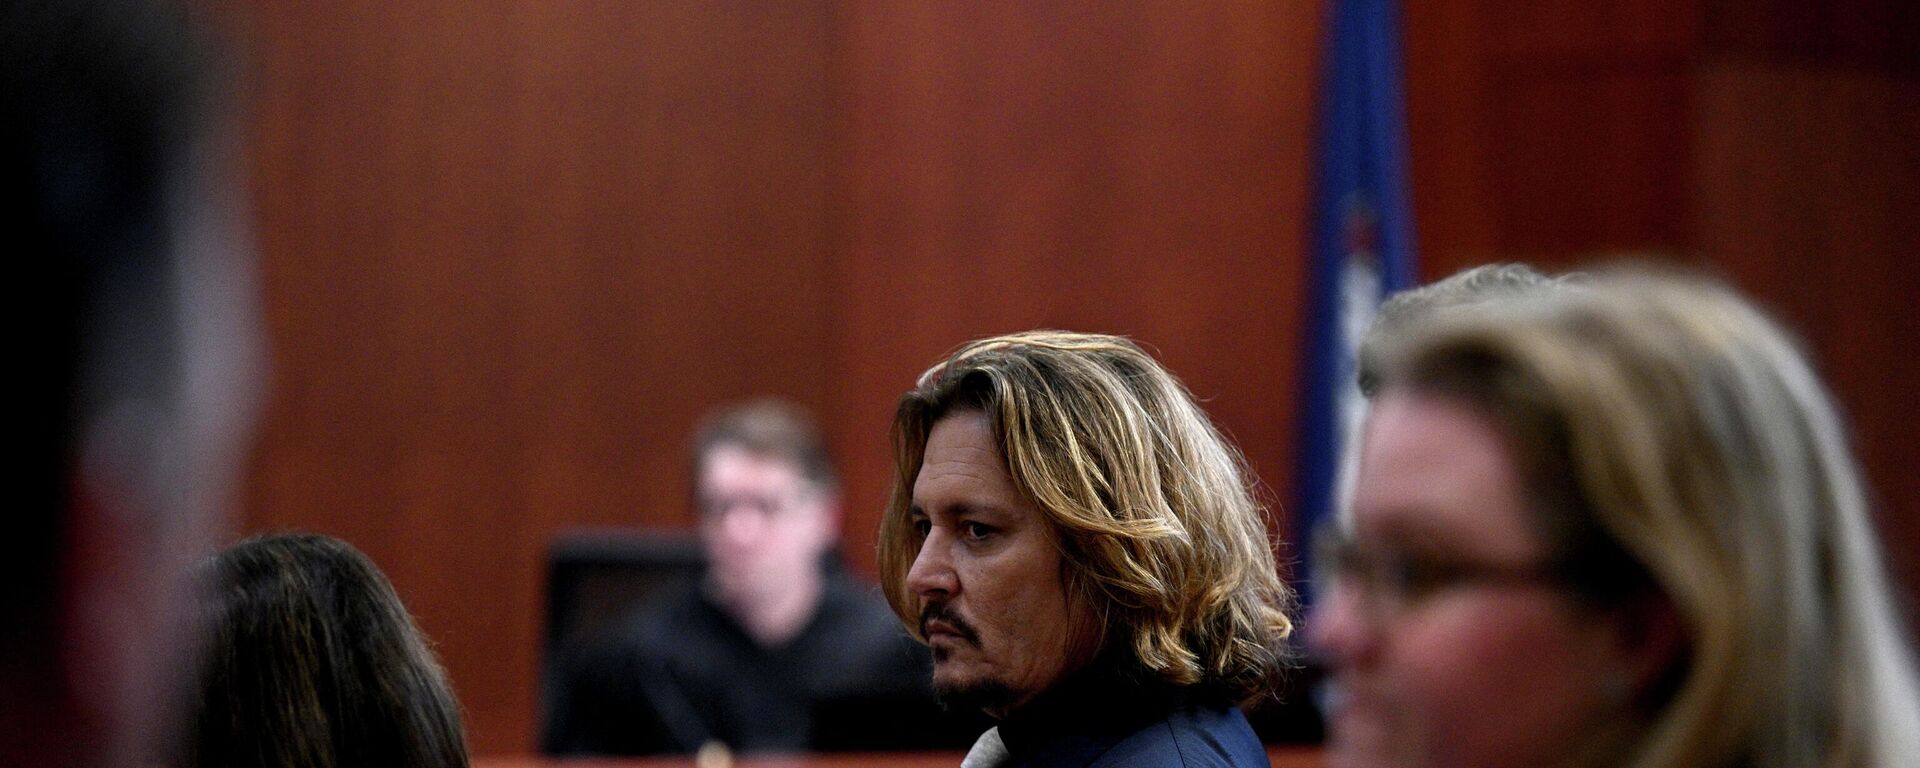 Johnny Depp, Amber Heard'e 50 milyon dolar tazminat talebiyle açtığı iftira davasının görüldüğü mahkemede (ABD, Virgina, Fairfax, 12 Nisan 2022) - Sputnik Türkiye, 1920, 13.04.2022